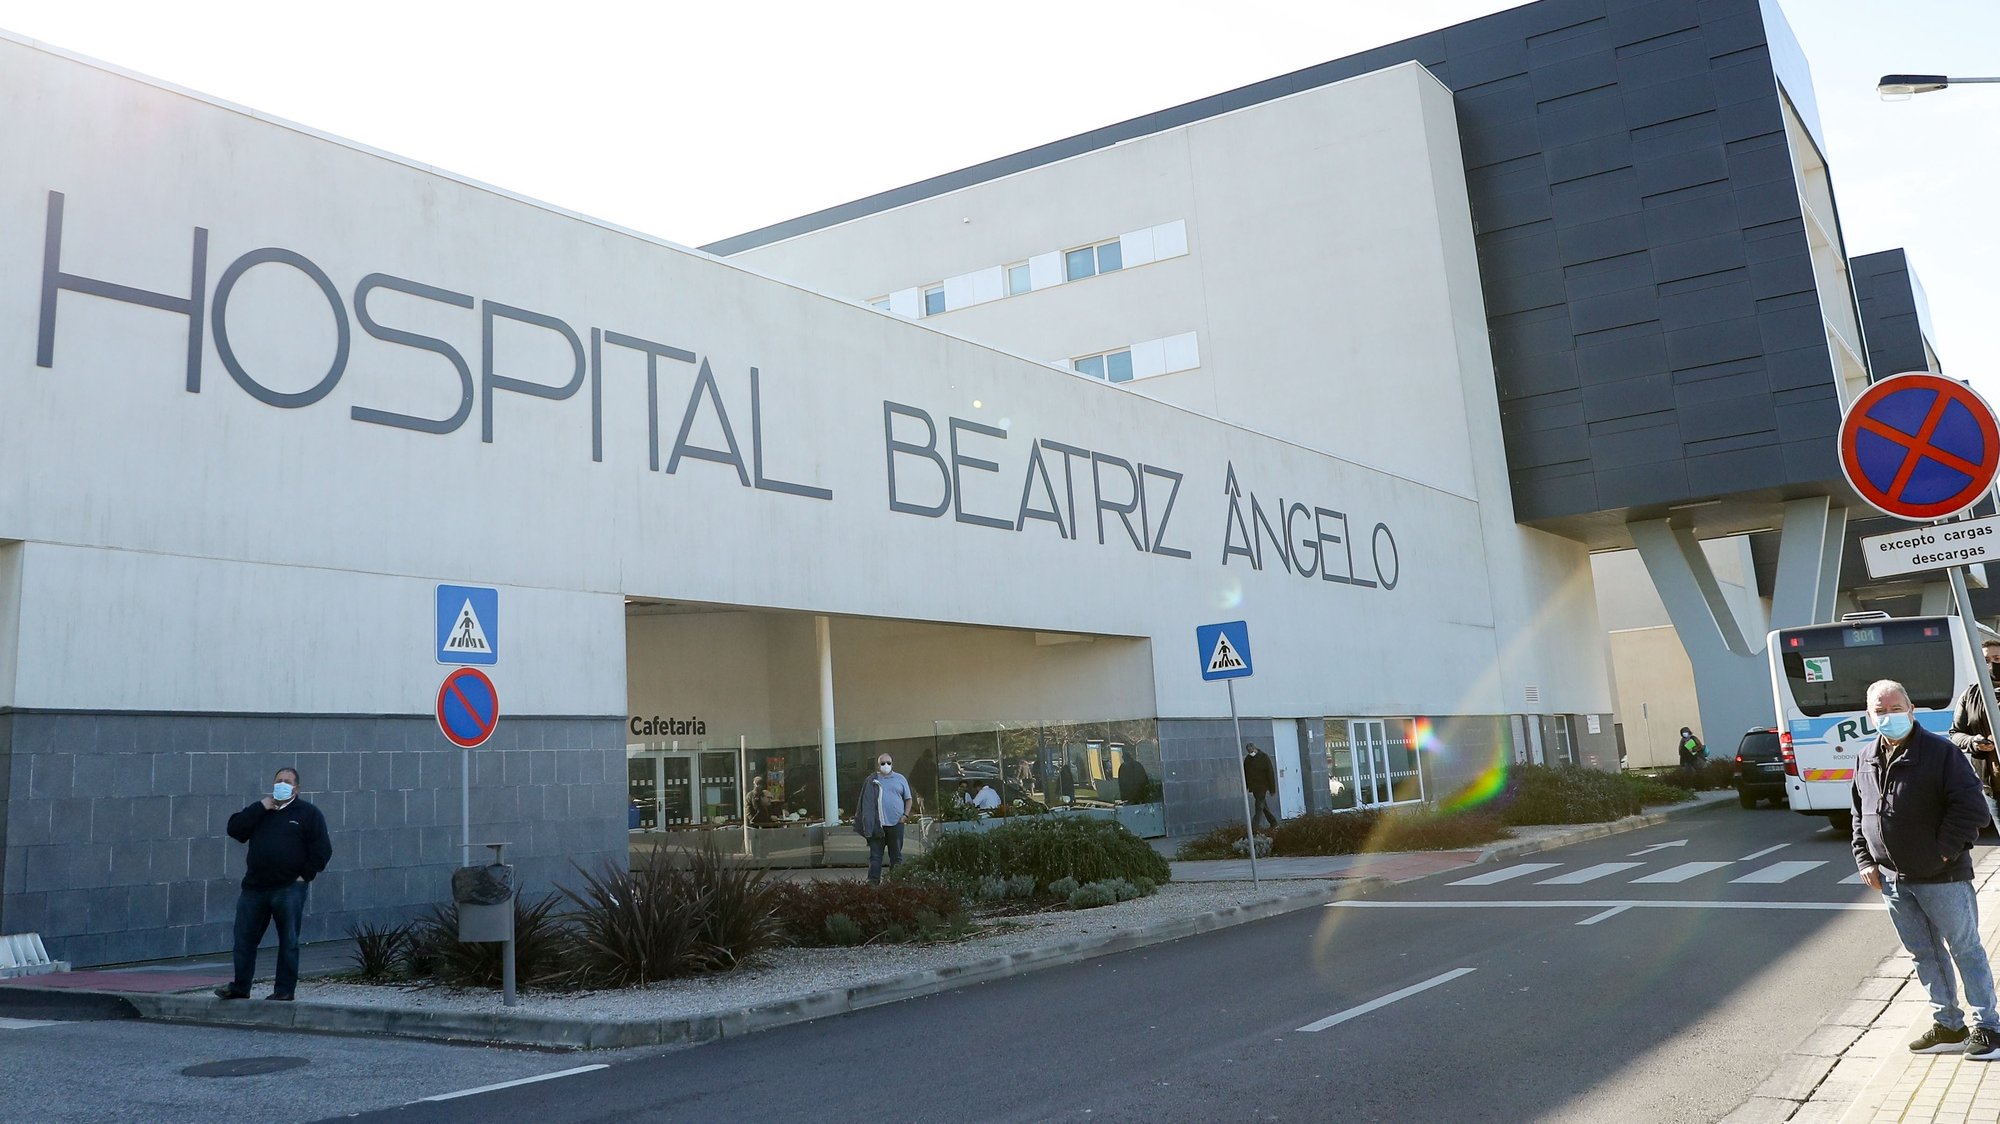 Hospital  Beatriz Ângelo, Loures, 18 de janeiro de 2022. ANTÓNIO COTRIM/LUSA